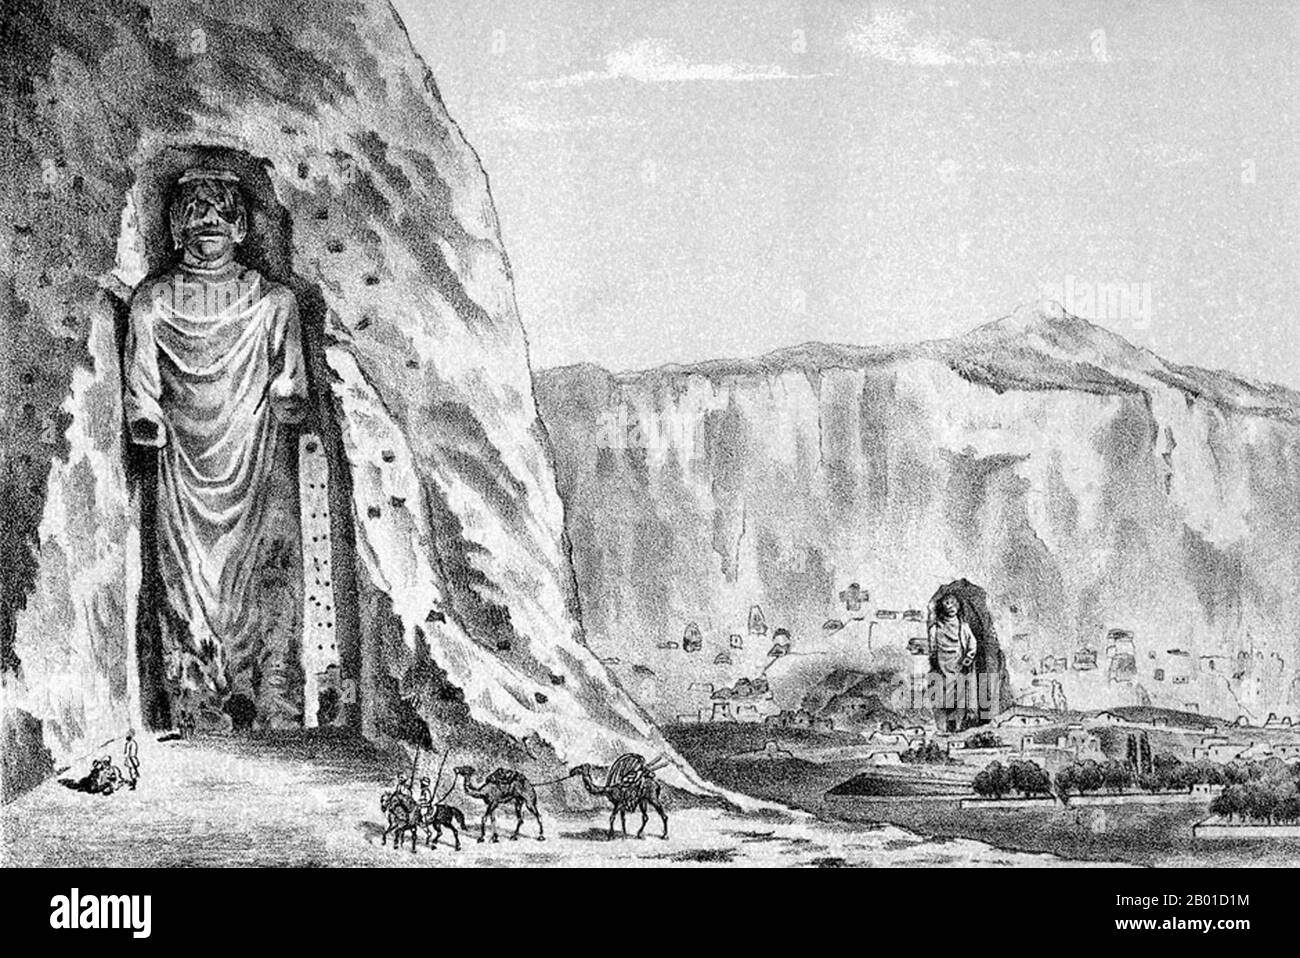 Afghanistan: I Buddha di Bamiyan rappresentati da Iwan Lawrowwitsch Jaworski (fl. 1870s-1880s), c.. 1885. I Buddha di Bamiyan erano due statue monumentali del 6th ° secolo di Buddha in piedi scolpiti sul lato di una rupe nella valle di Bamiyan nella regione di Hazarajat dell'Afghanistan centrale. Costruite nel 507 d.C., le più grandi nel 554 d.C., le statue rappresentavano il classico stile misto dell'arte di Gandhara. I corpi sono stati scavati direttamente dalle scogliere di arenaria, ma i dettagli sono stati modellati in fango mescolato con paglia. Sono stati intenzionalmente dinamitati e distrutti nel 2001 dai talebani, dichiarati come 'idoli' Foto Stock